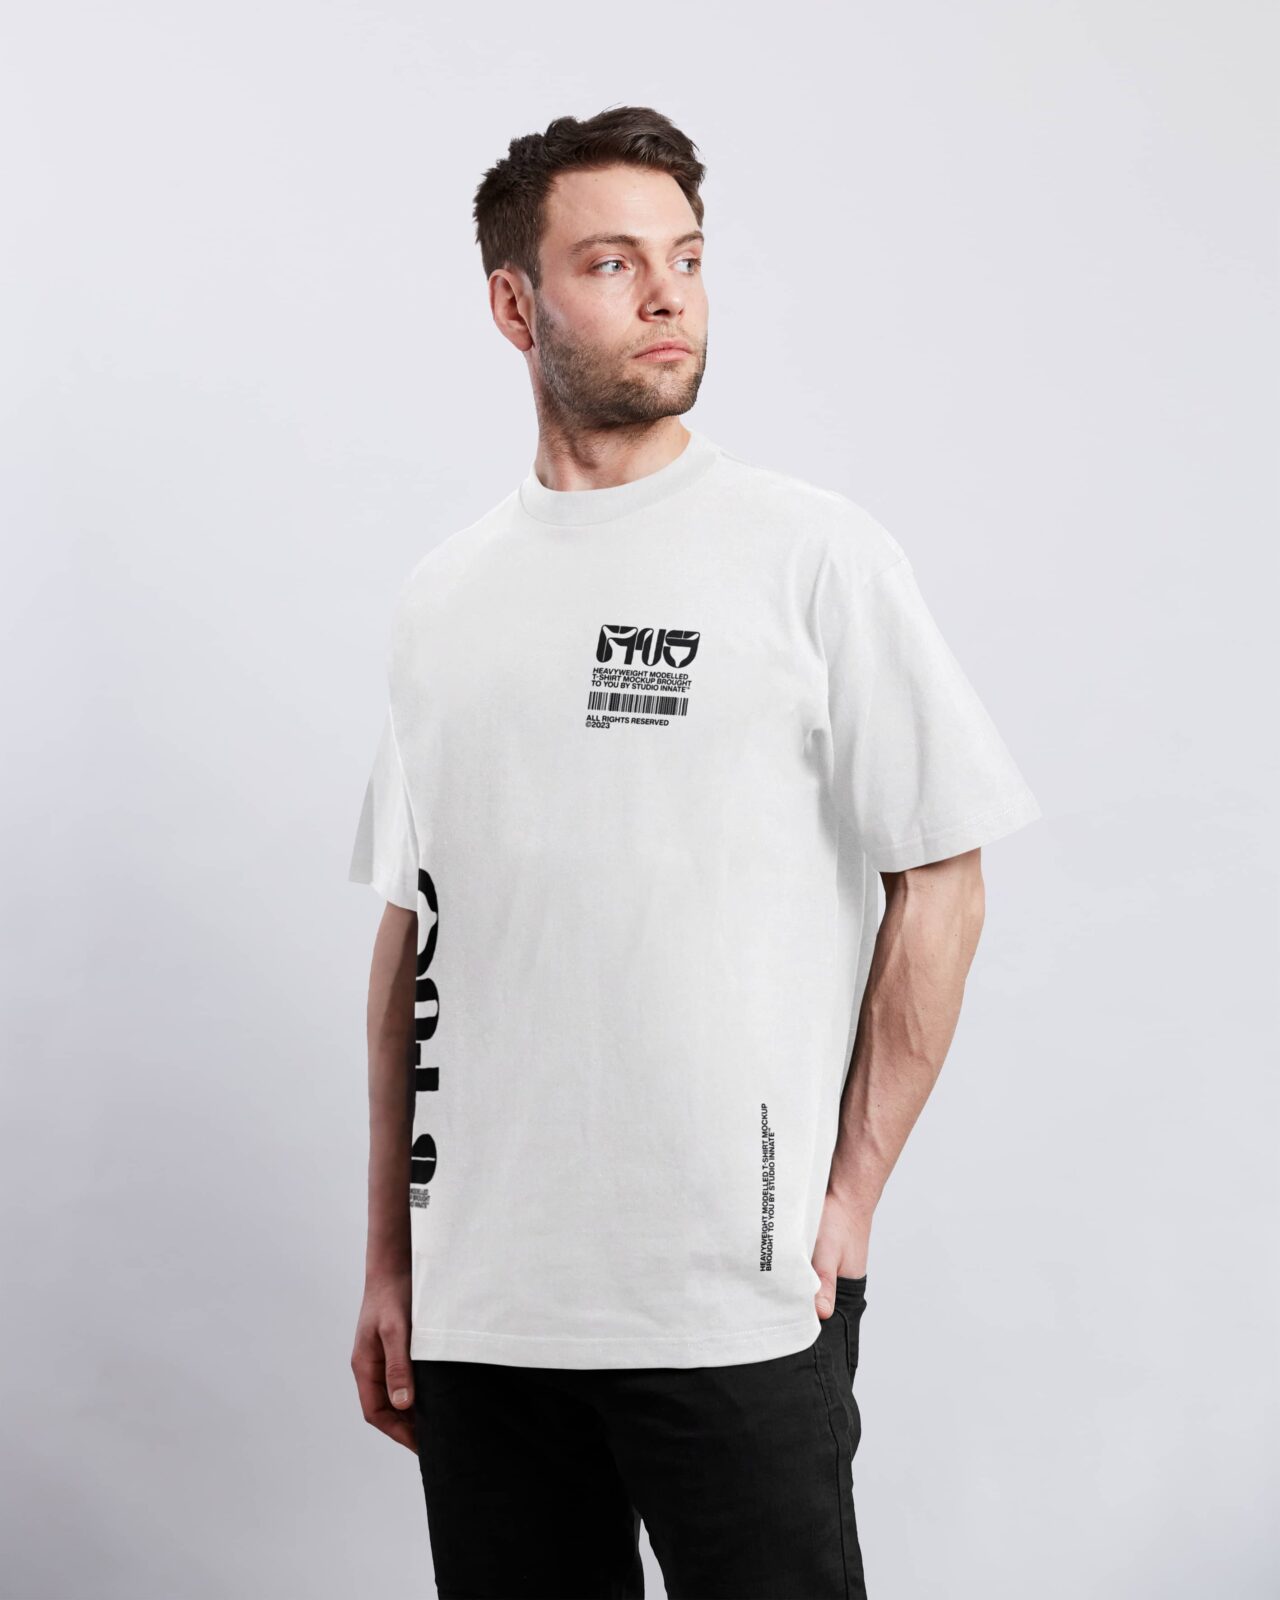 https://shop.studioinnate.com/wp-content/uploads/2023/03/Modelled-Oversized-T-Shirt-Mockup-5-1280x1600.jpg